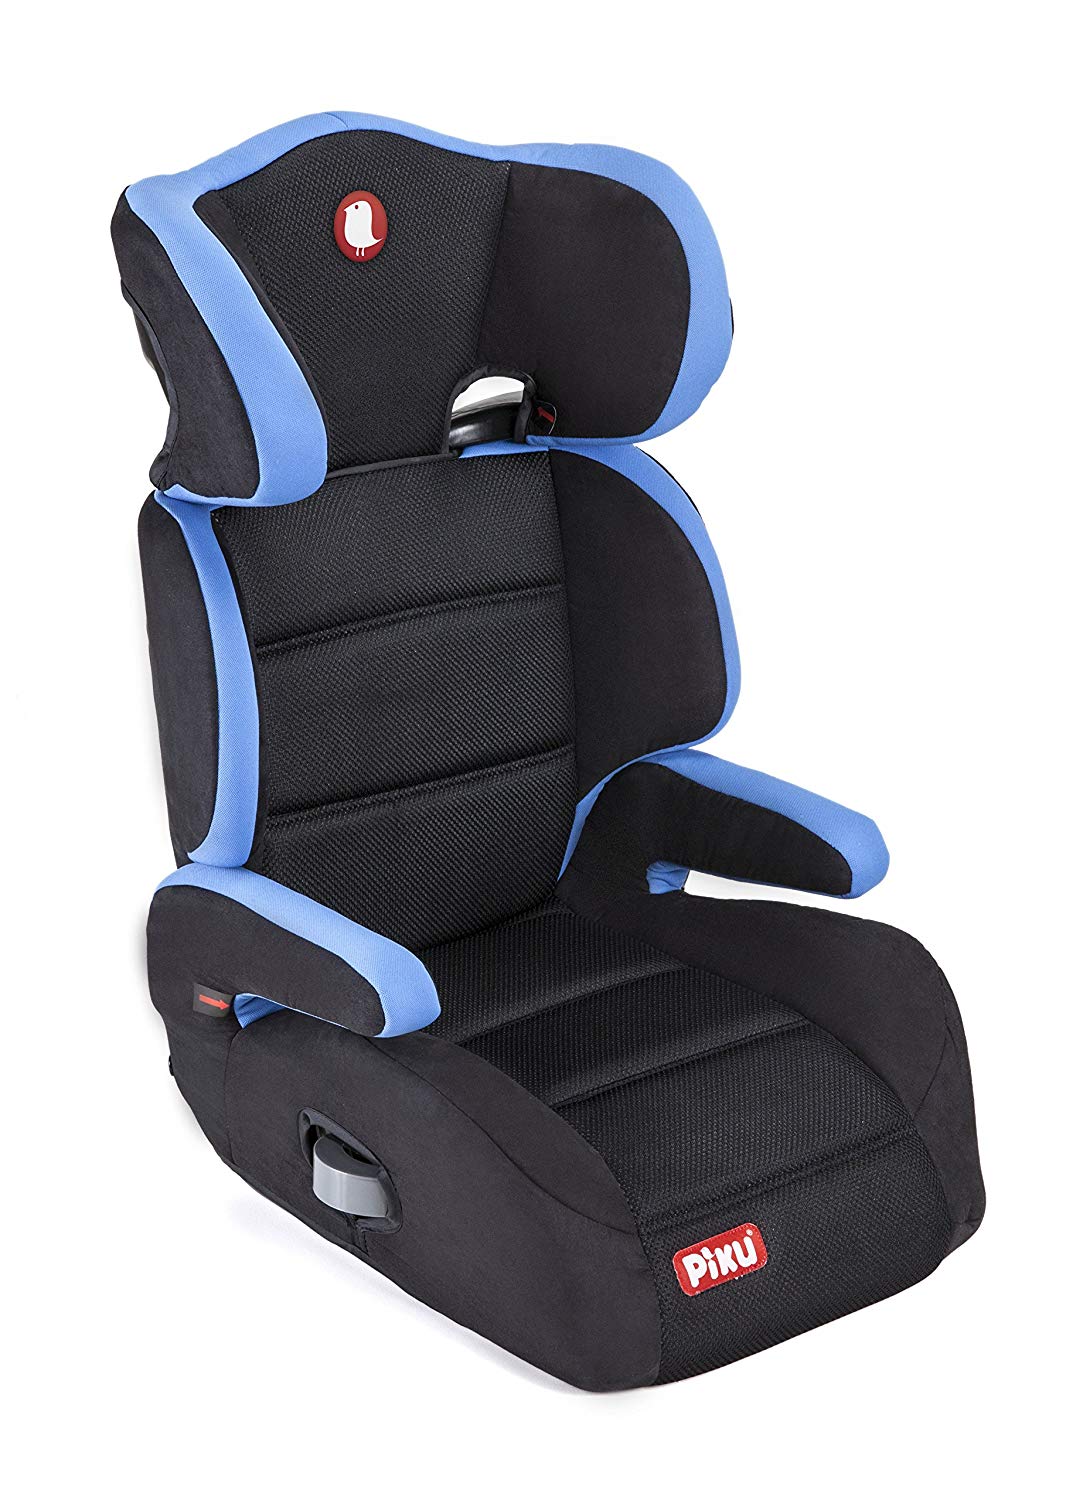 Piku 6227 Car Seat Group 2/3 15-36 kg 3-12 Years Blue / Black